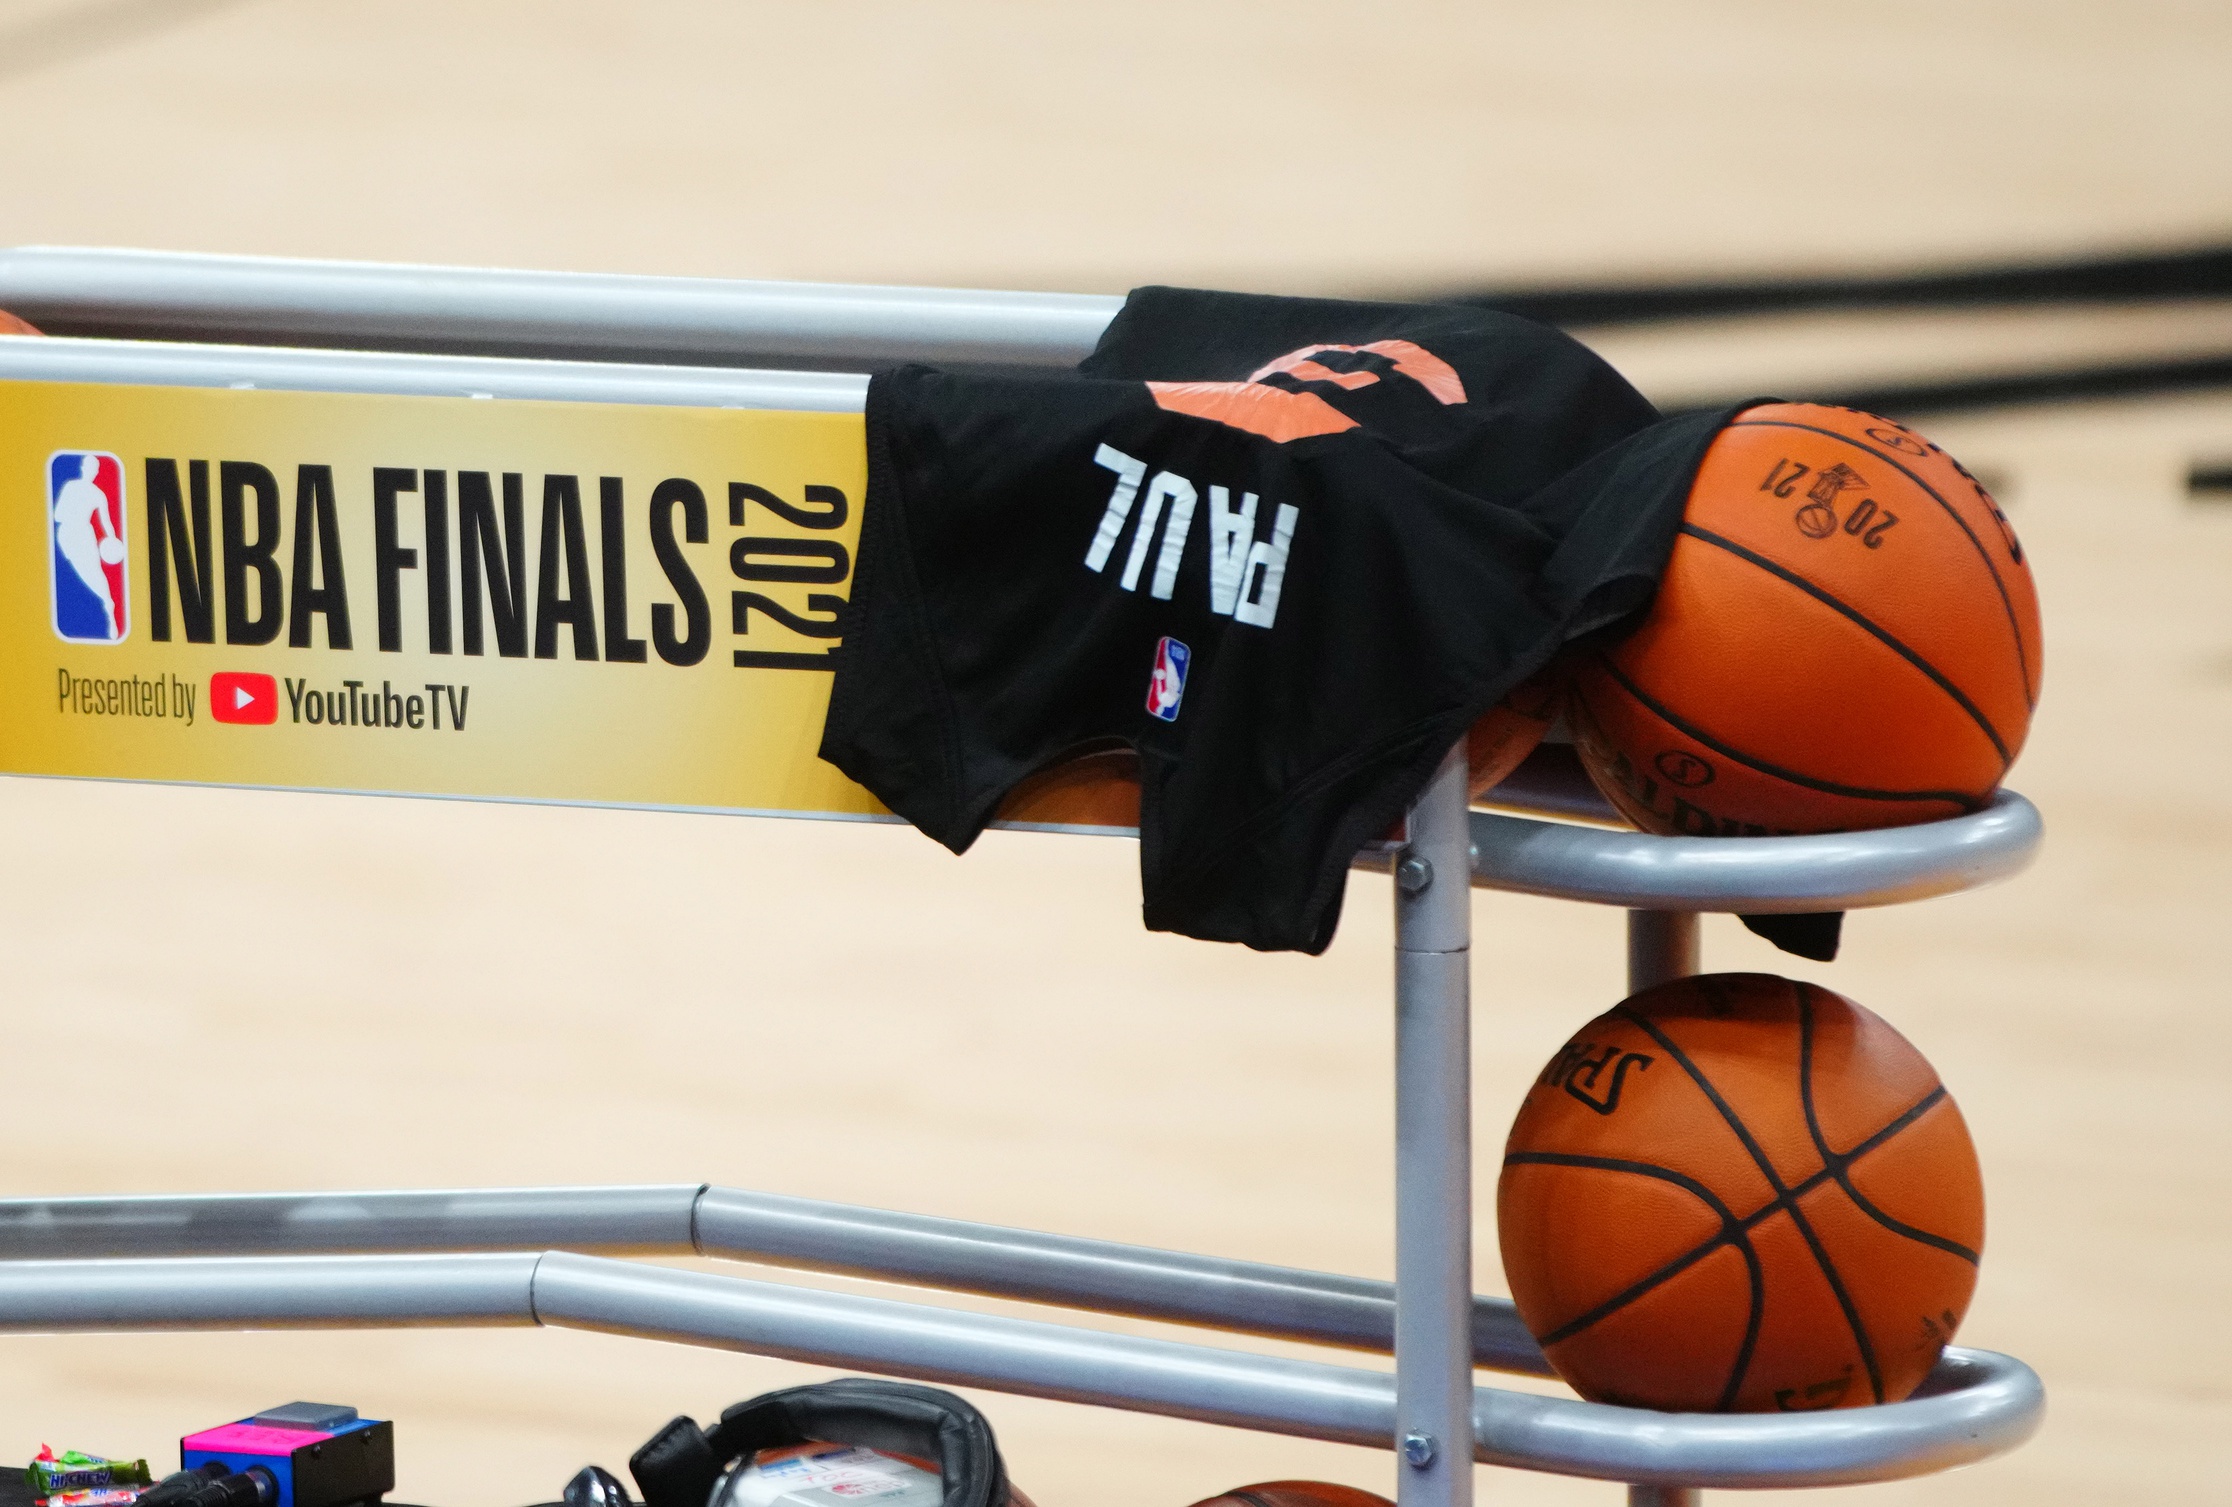 Chris Paul NBA Finals jersey
